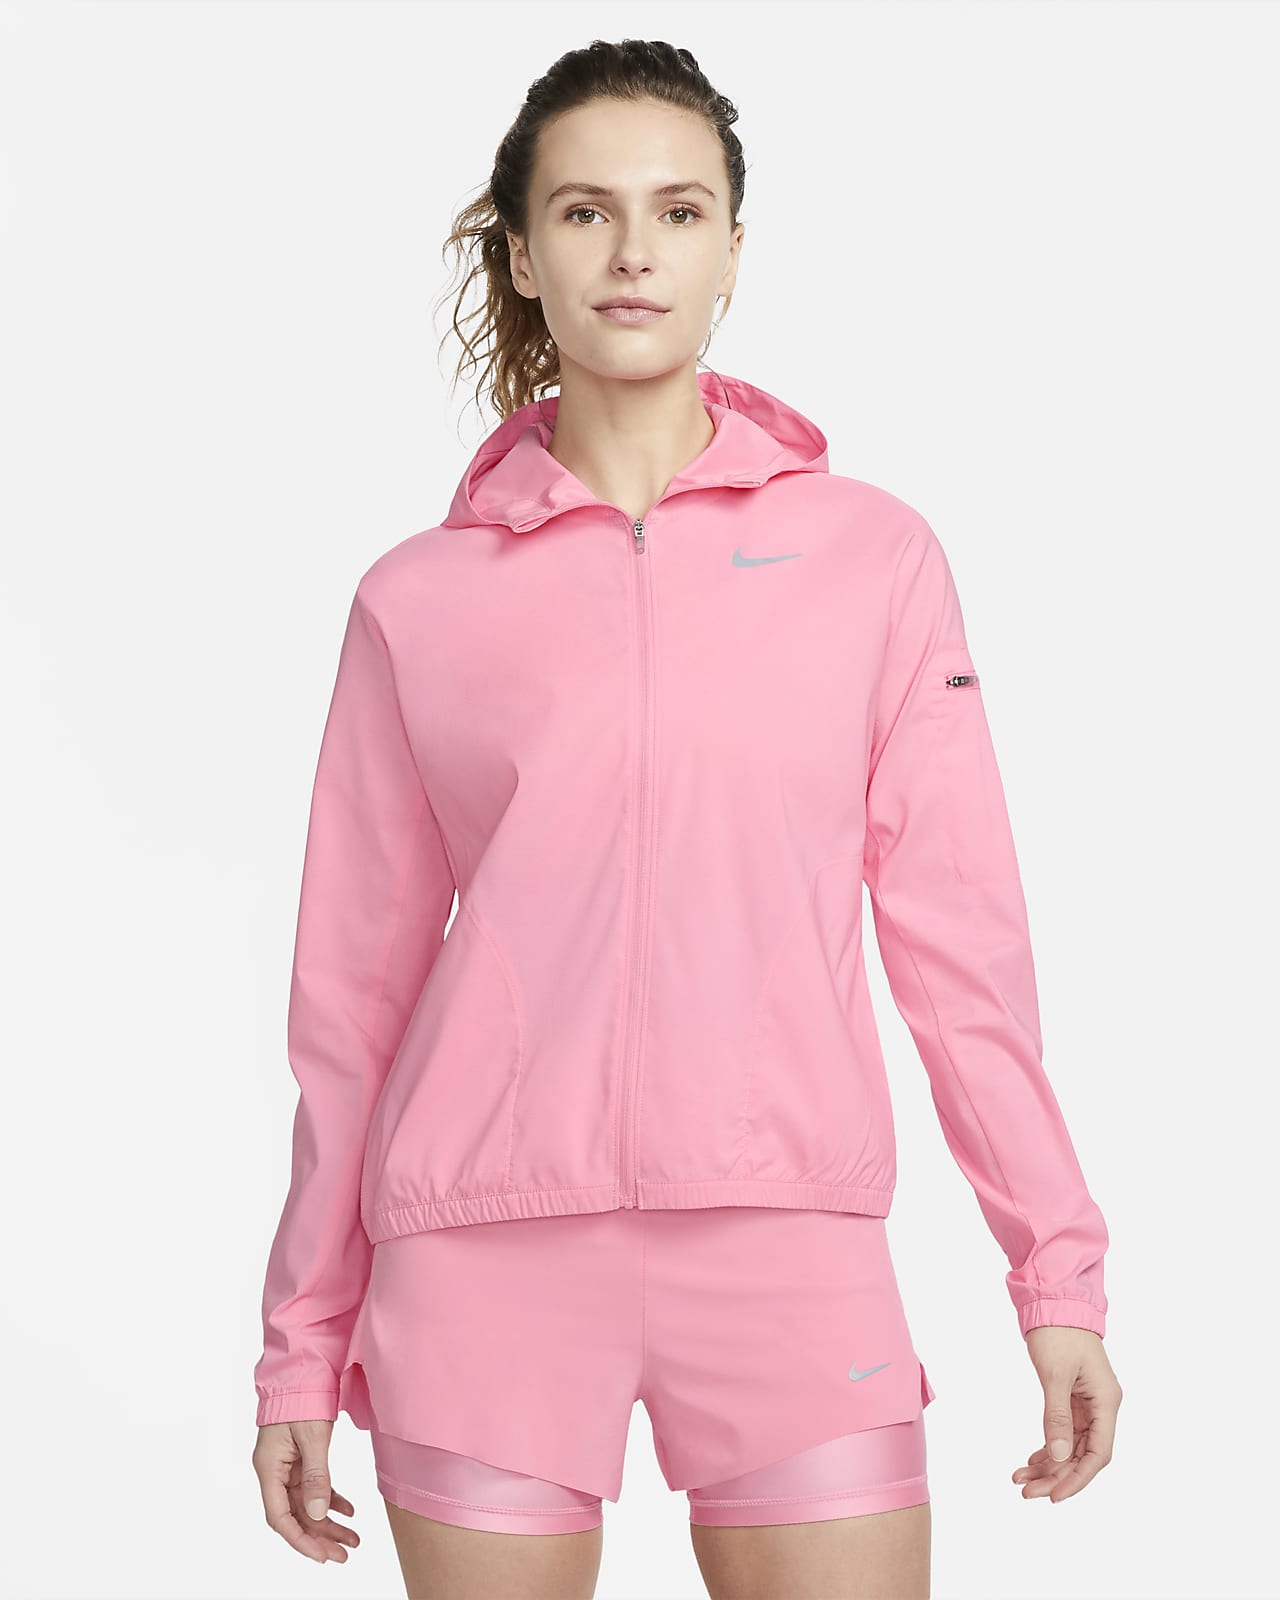 Nike Impossibly Light Women's Running Jacket. UK